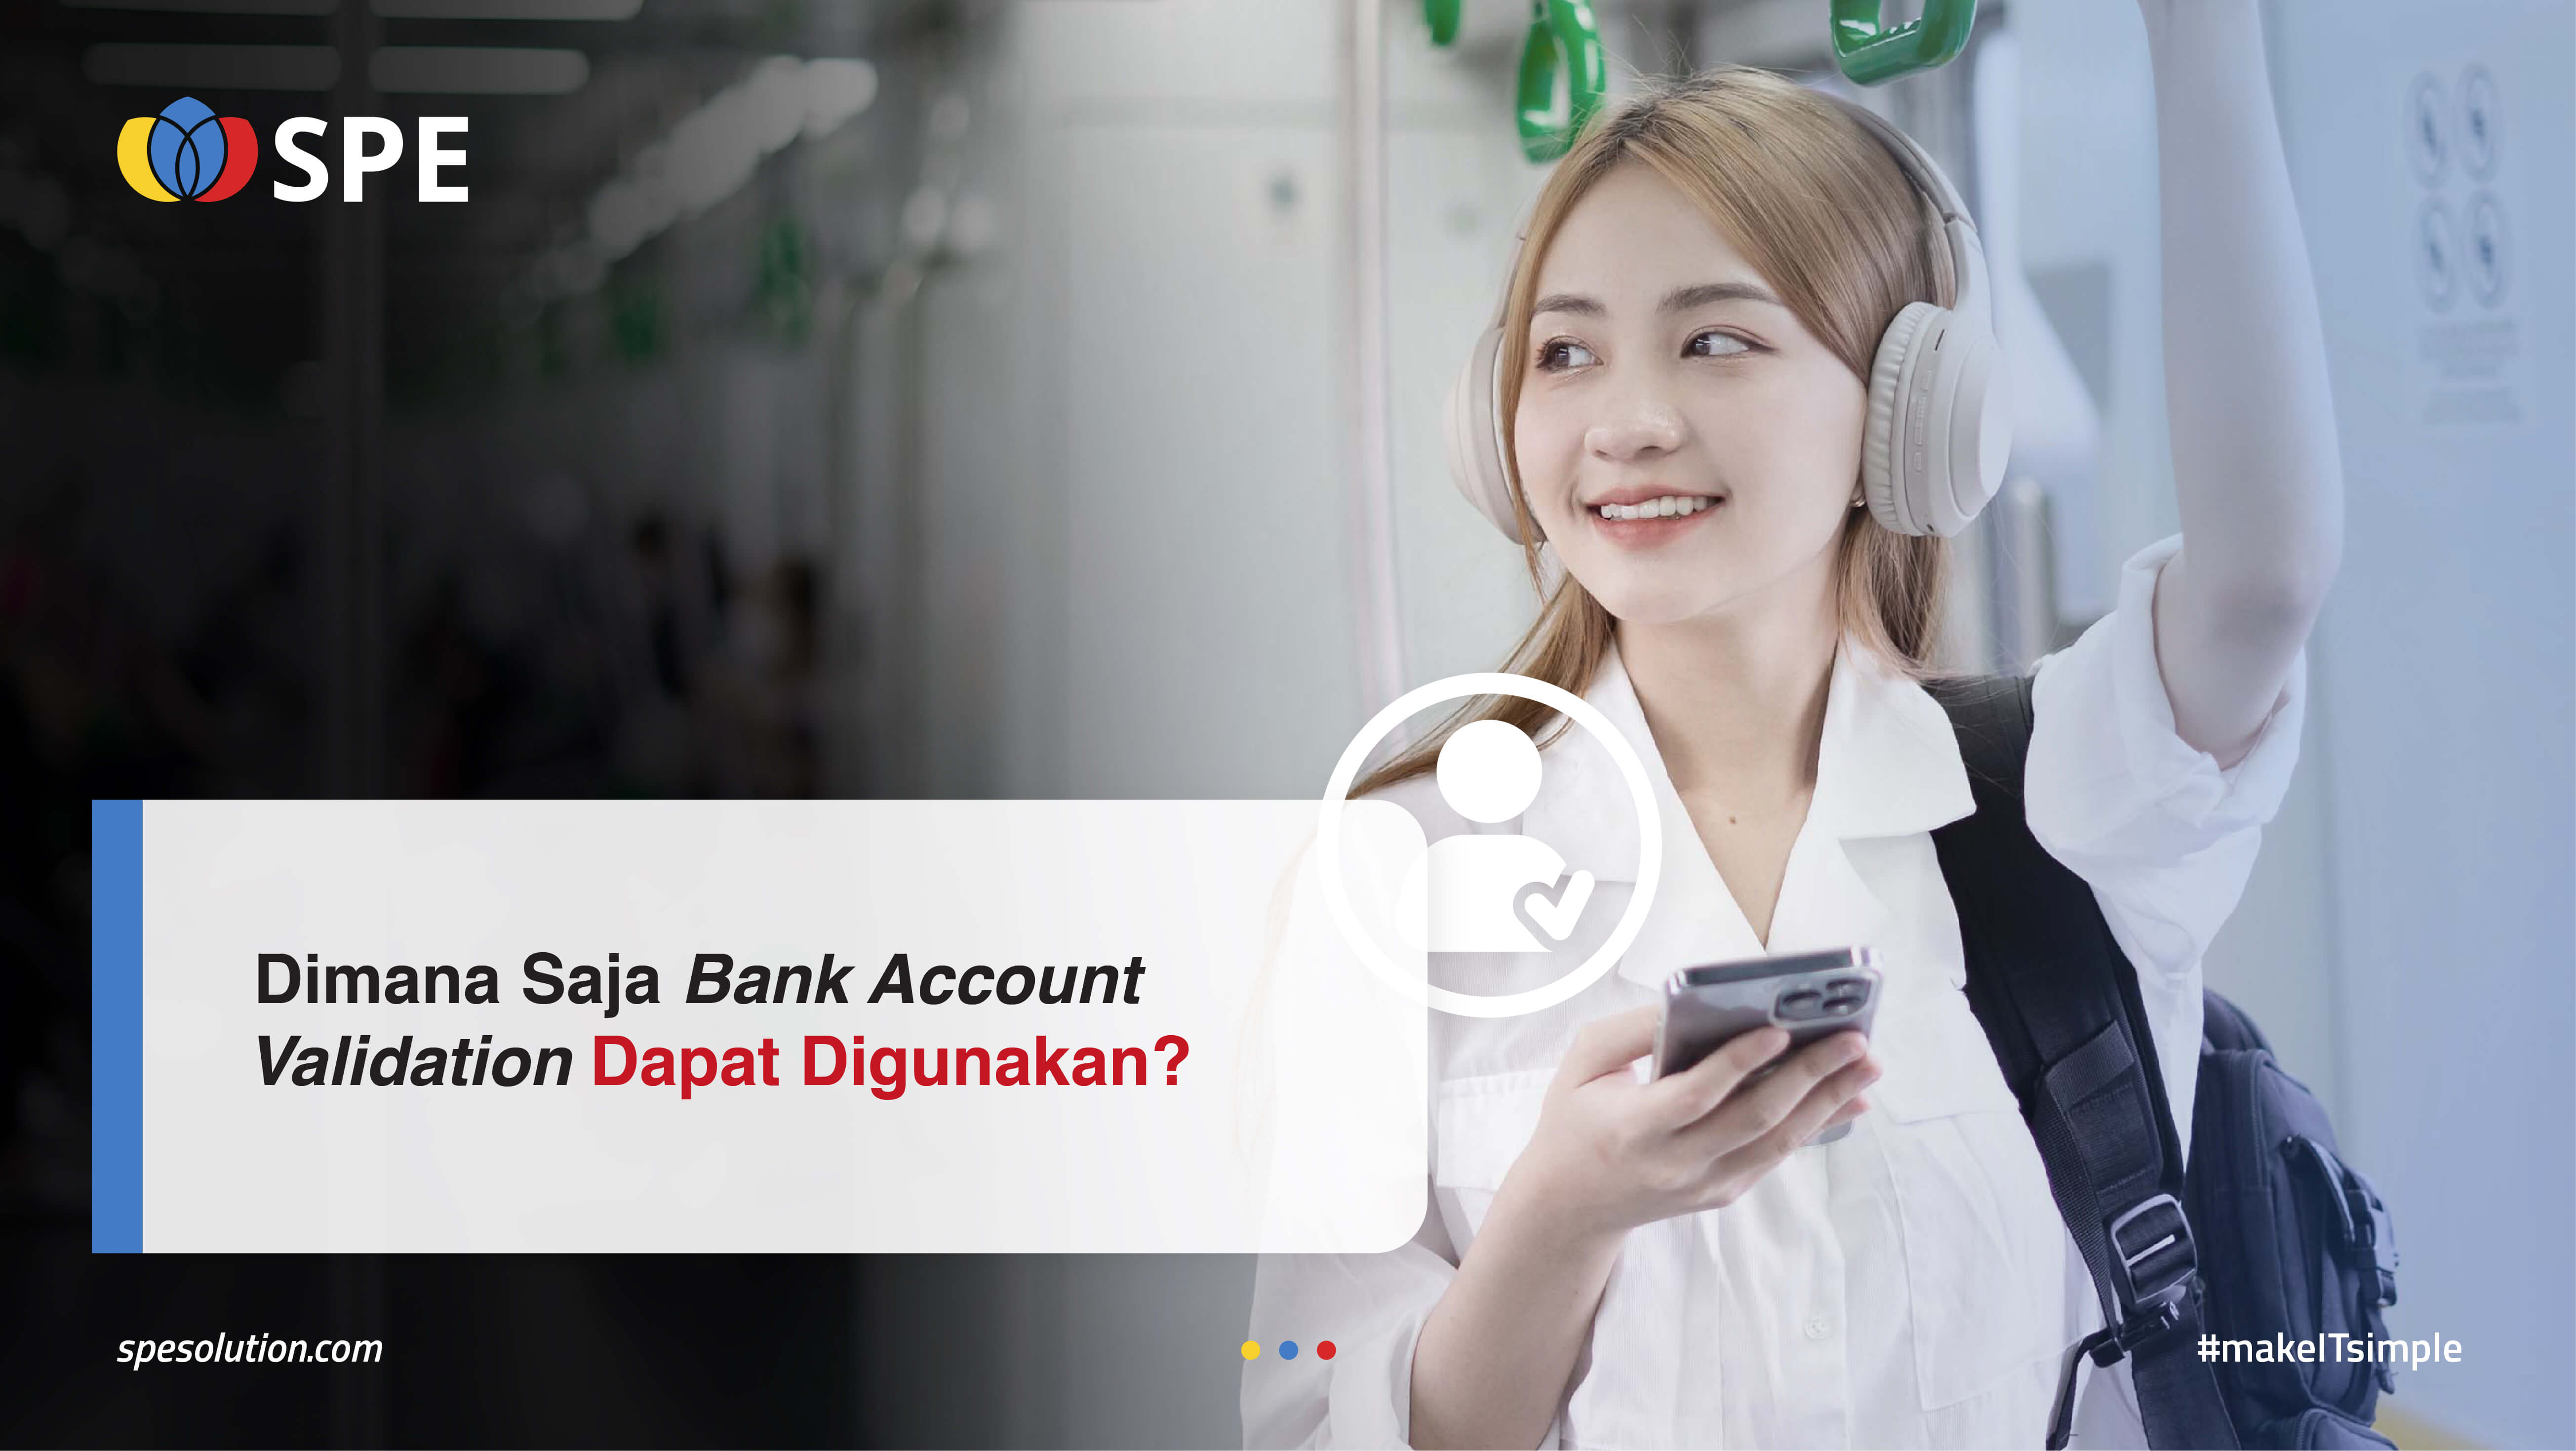 Dimana Saja Bank Account Validation Dapat Digunakan?